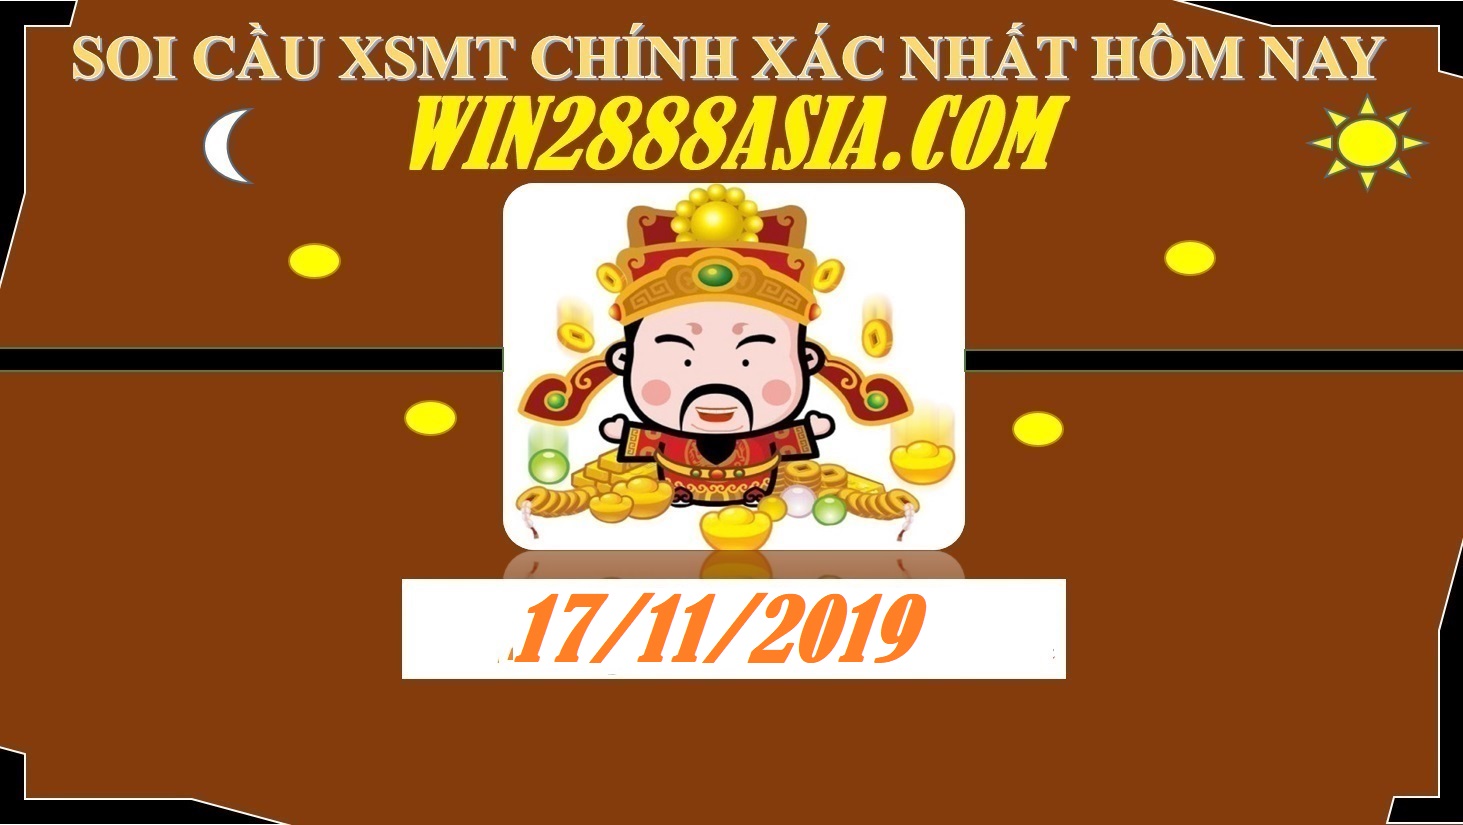 Soi cầu XSMT 17-11-2019 Win2888